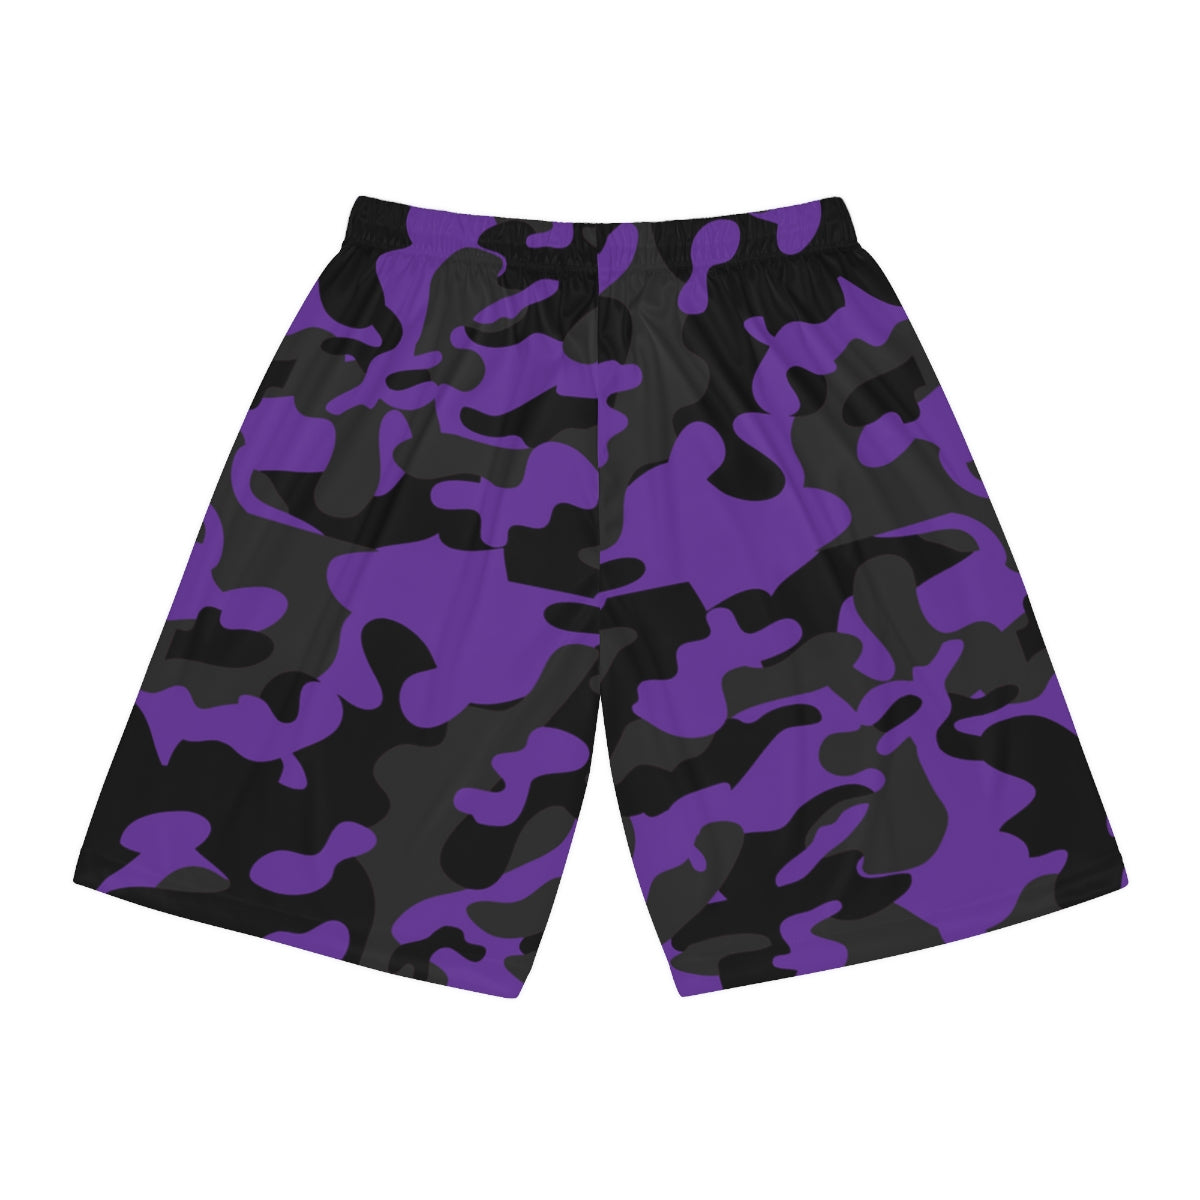 Battle Box BB Purple Camo Basketball Shorts